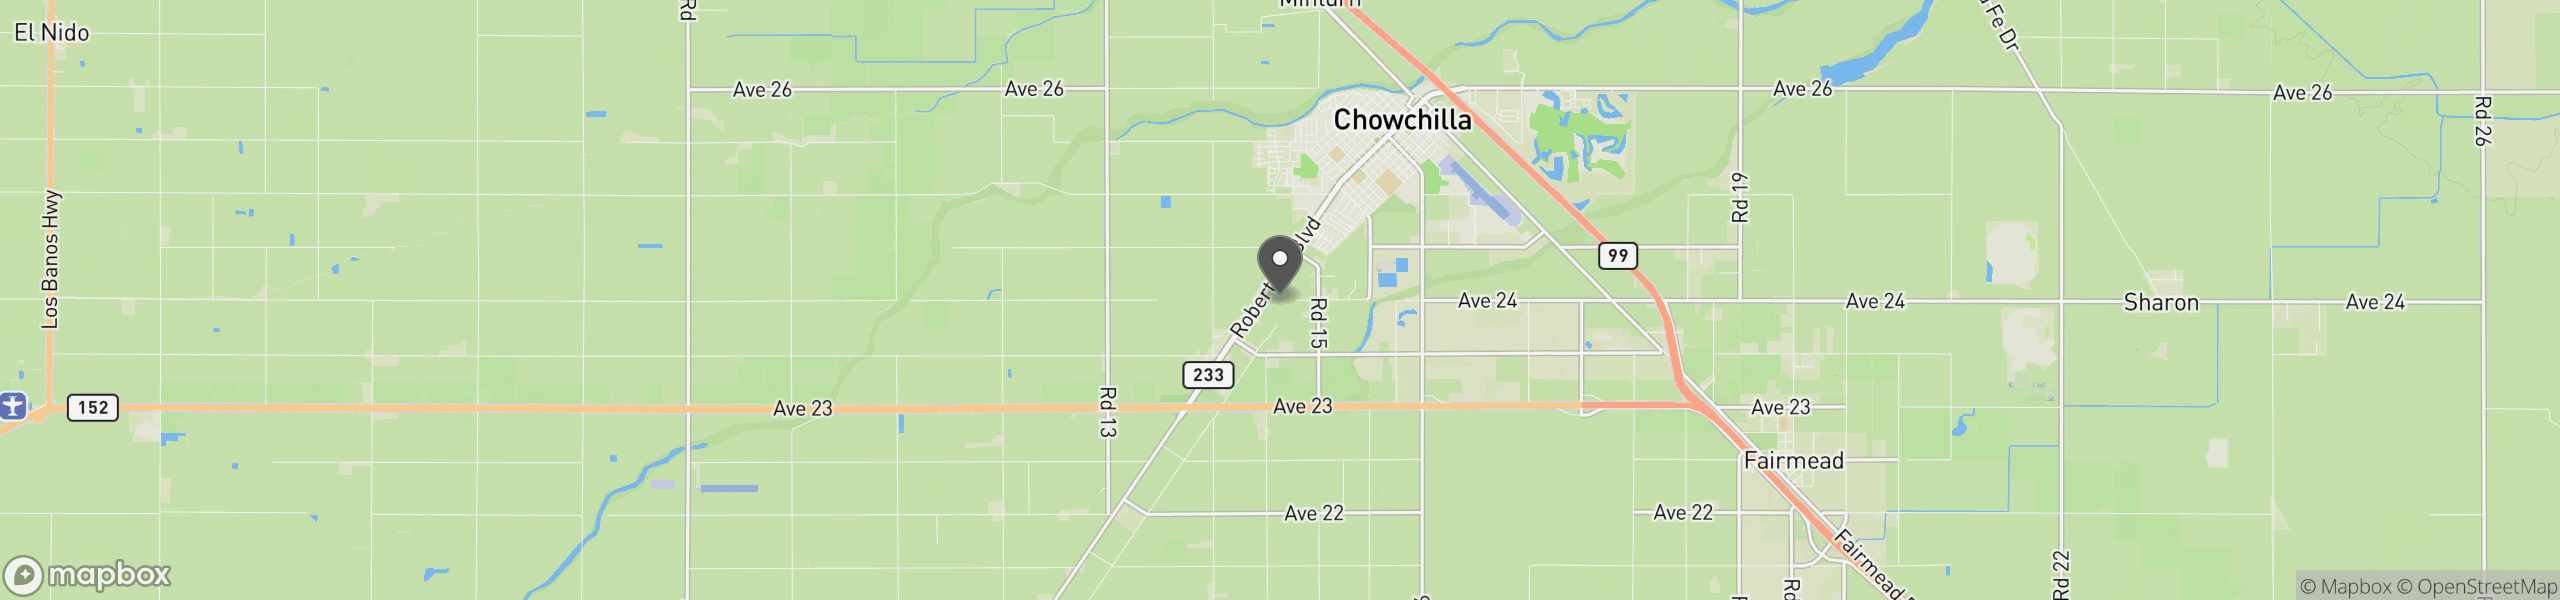 Chowchilla, CA